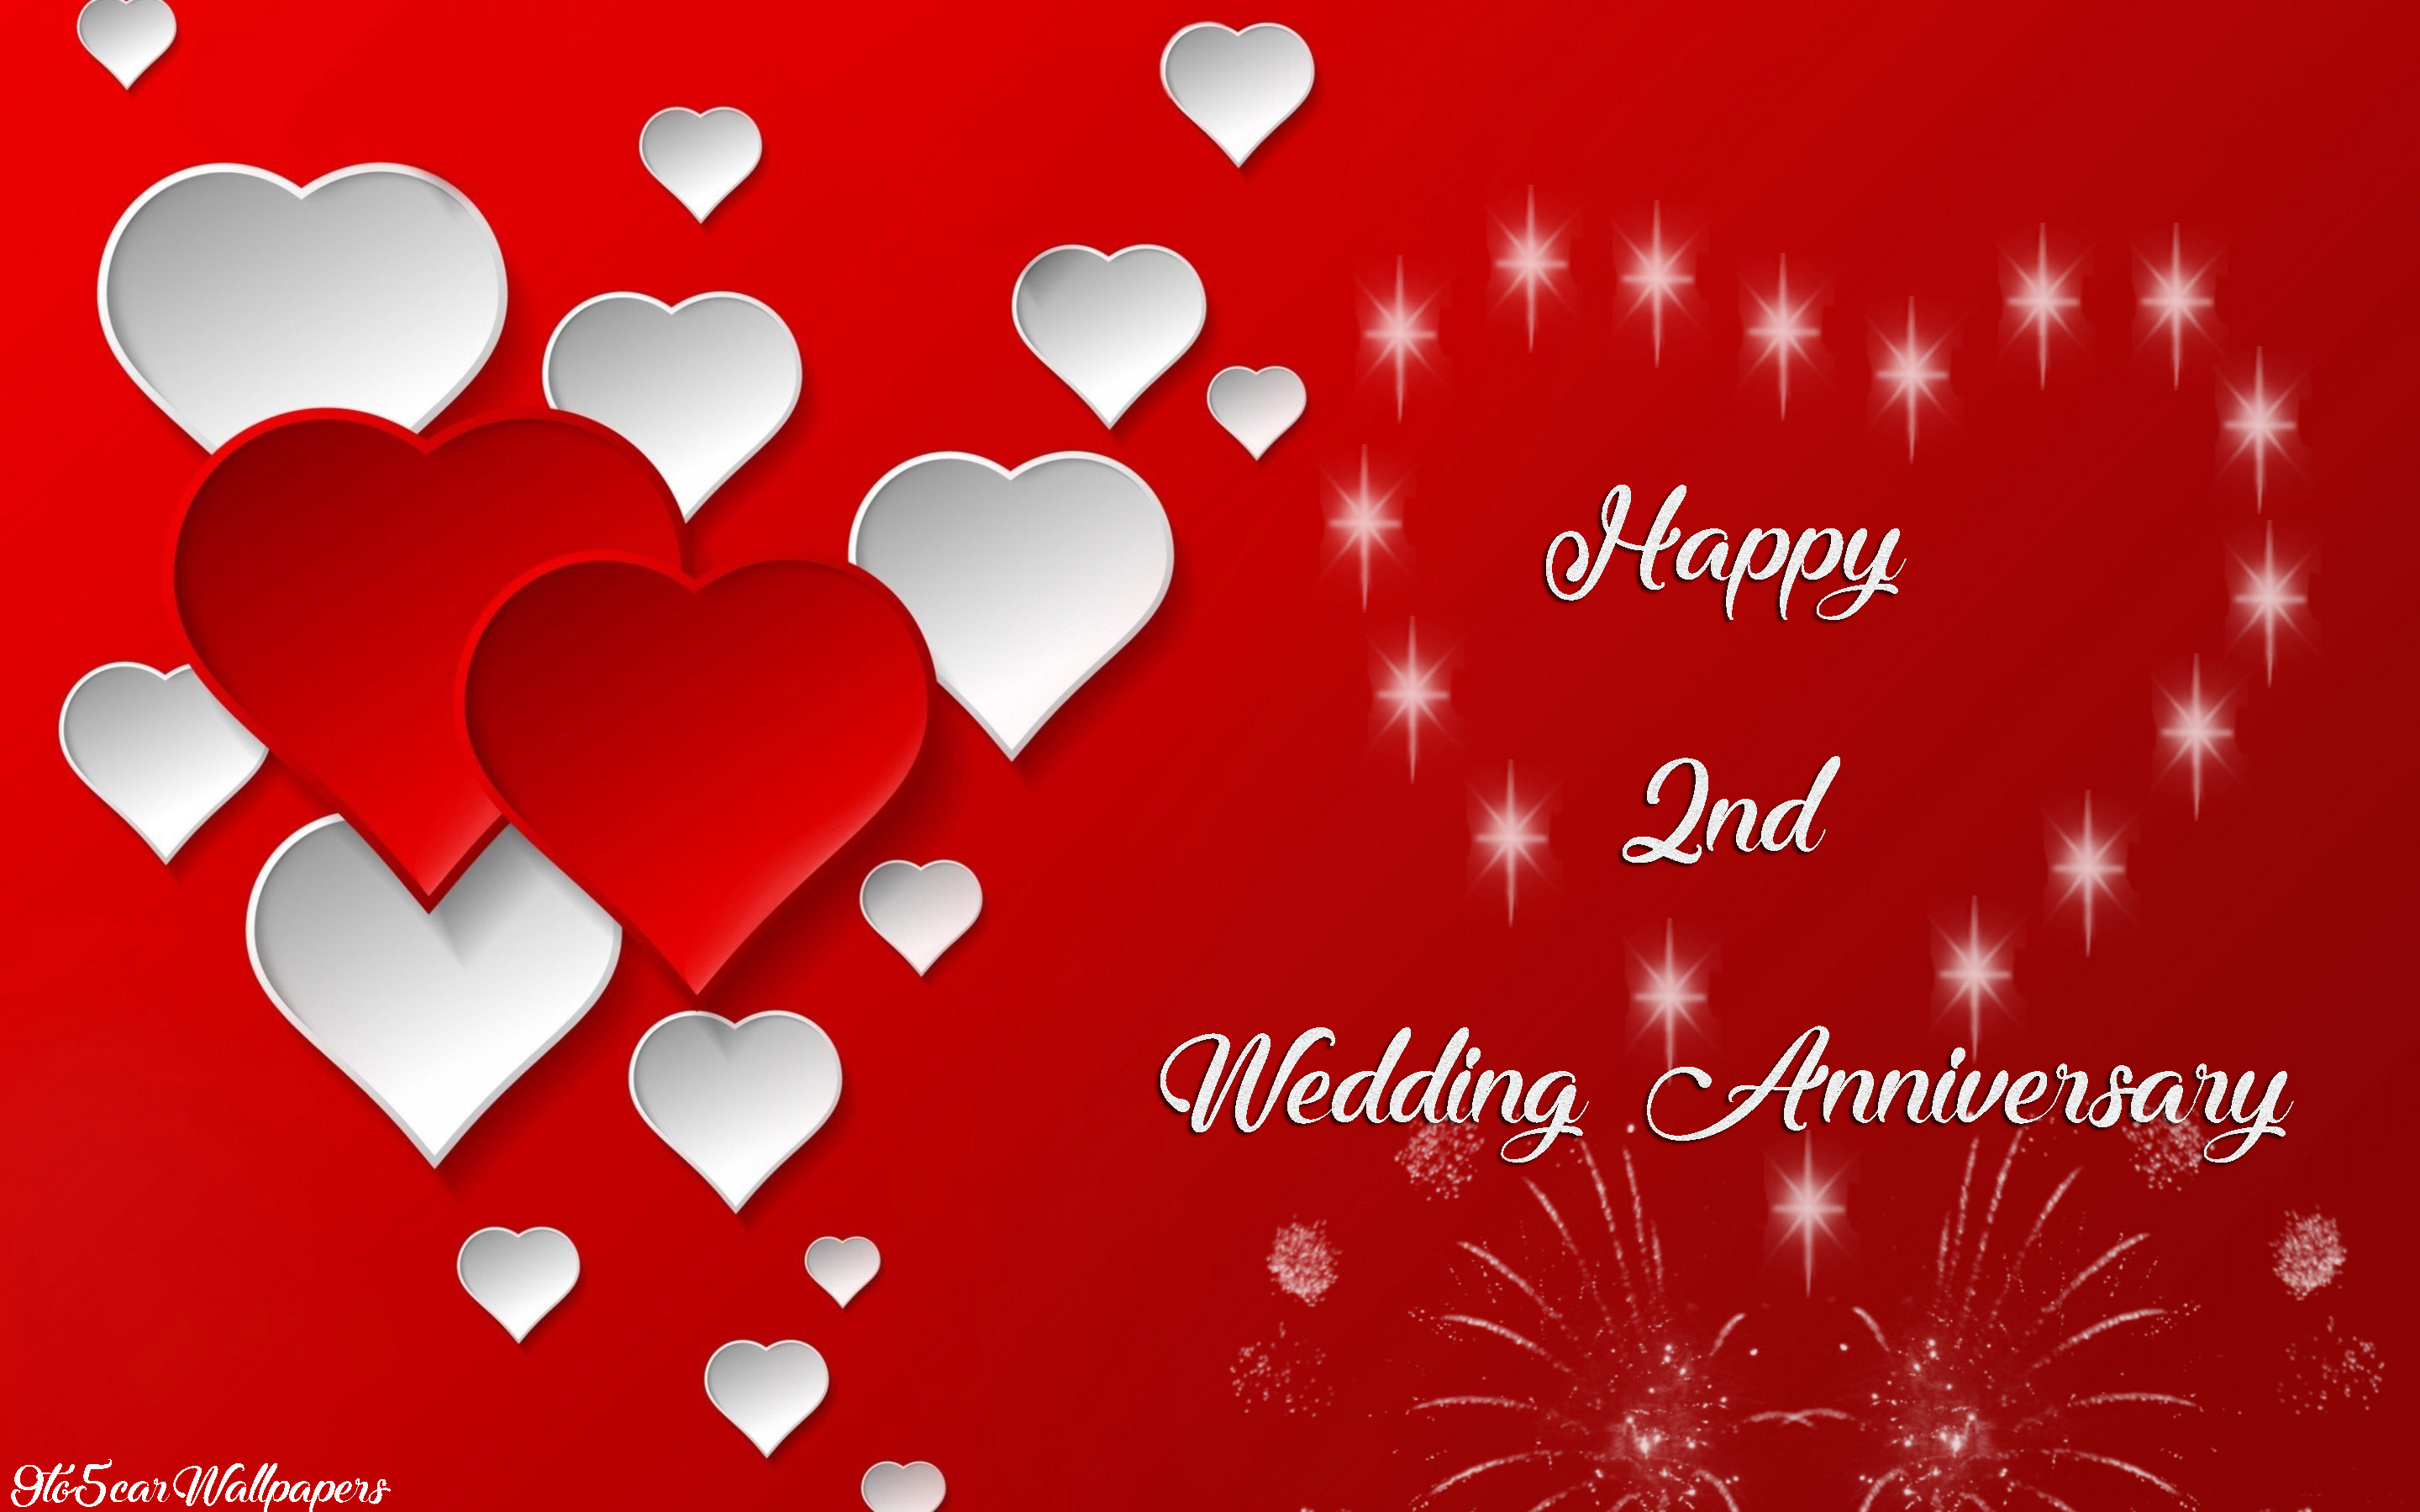 2nd-wedding-anniversary-wishes